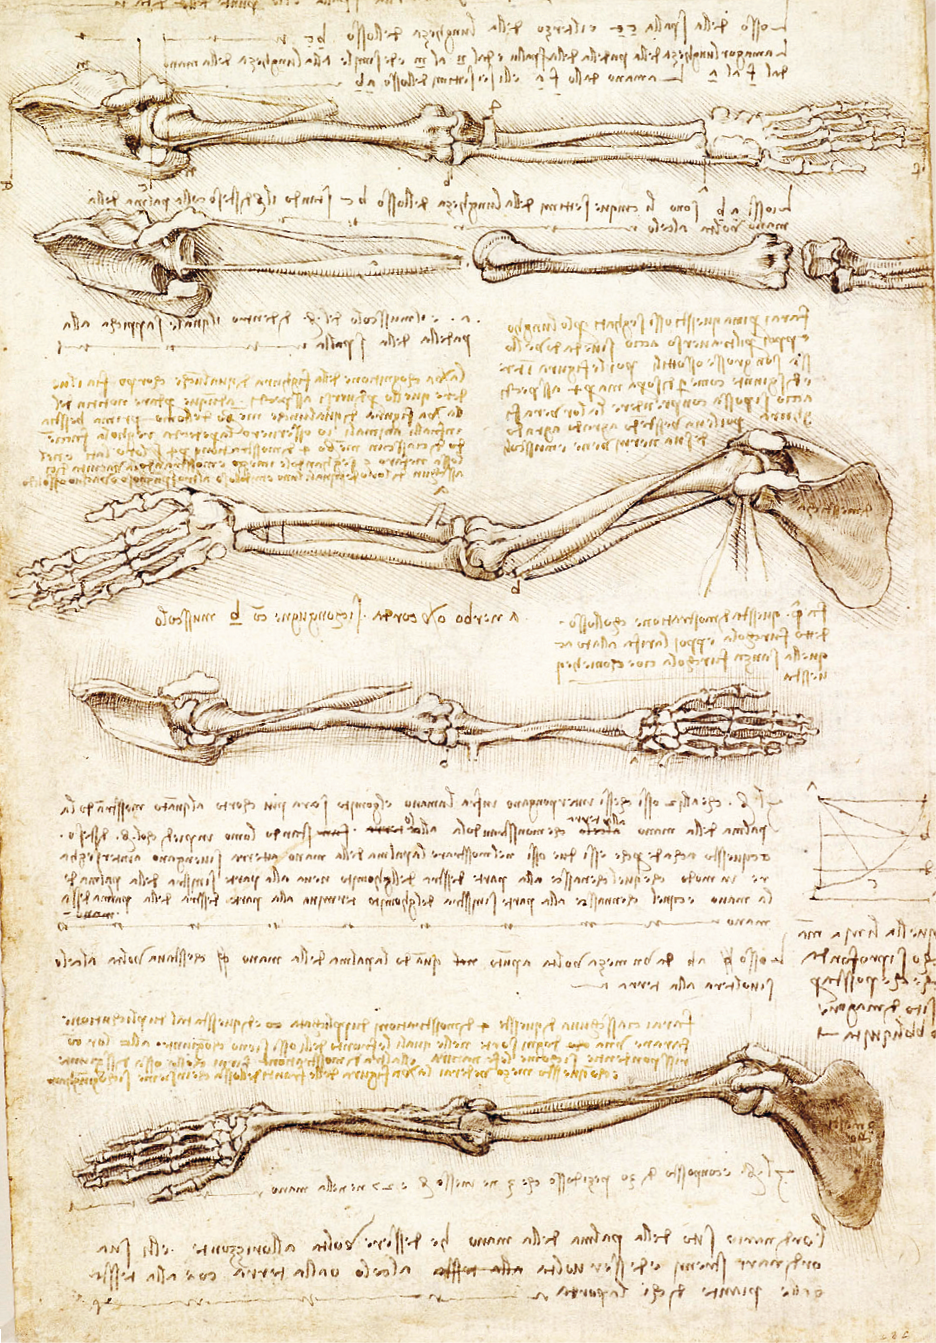 Desenho. Uma folha amarelada com desenhos feitos com linhas finas retratando anatomicamente ossos e músculos do corpo humano, dispostos um abaixo do outro. Entre eles, há palavras manuscritas em letras pequenas.